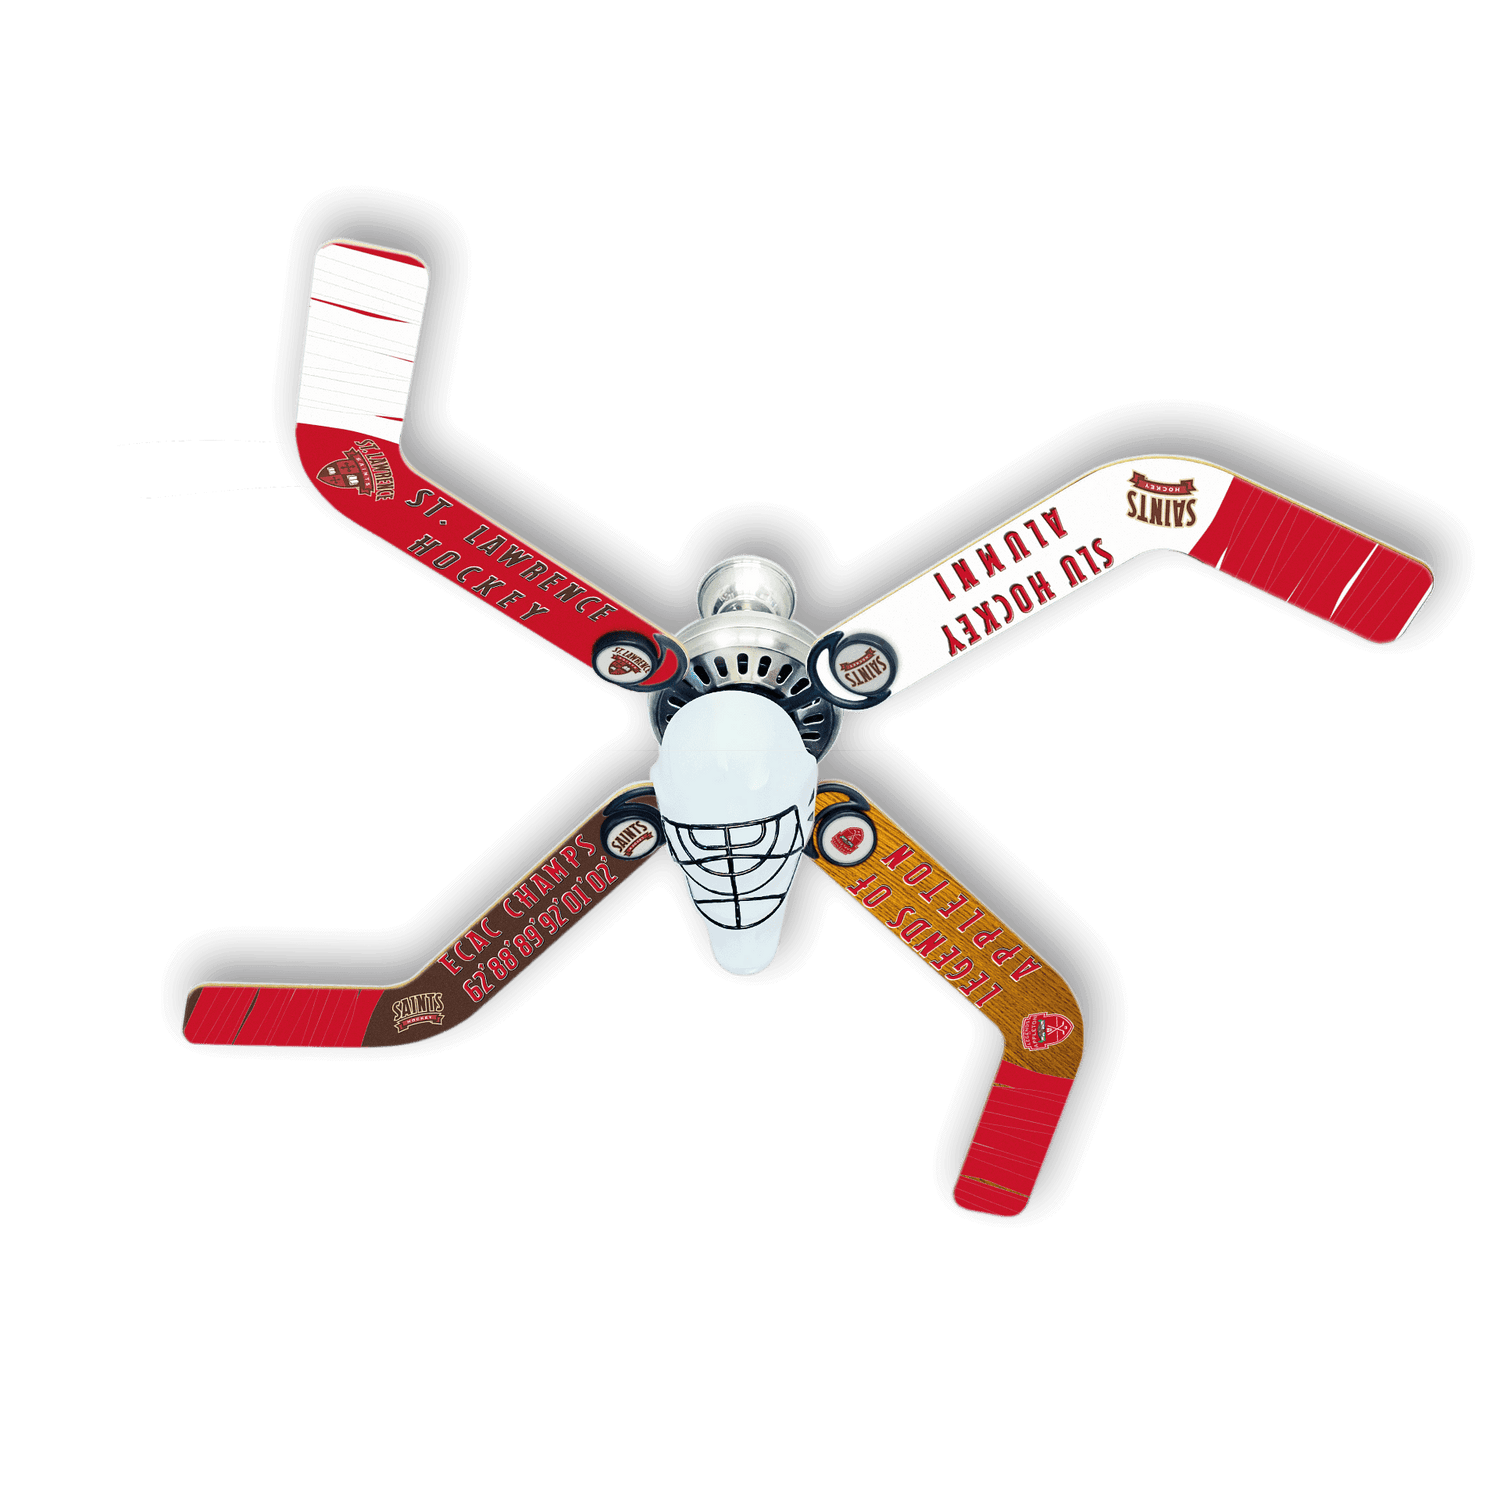 St. Lawrence University Hockey Commemorative Fan - Ultimate Hockey Ceiling Fans